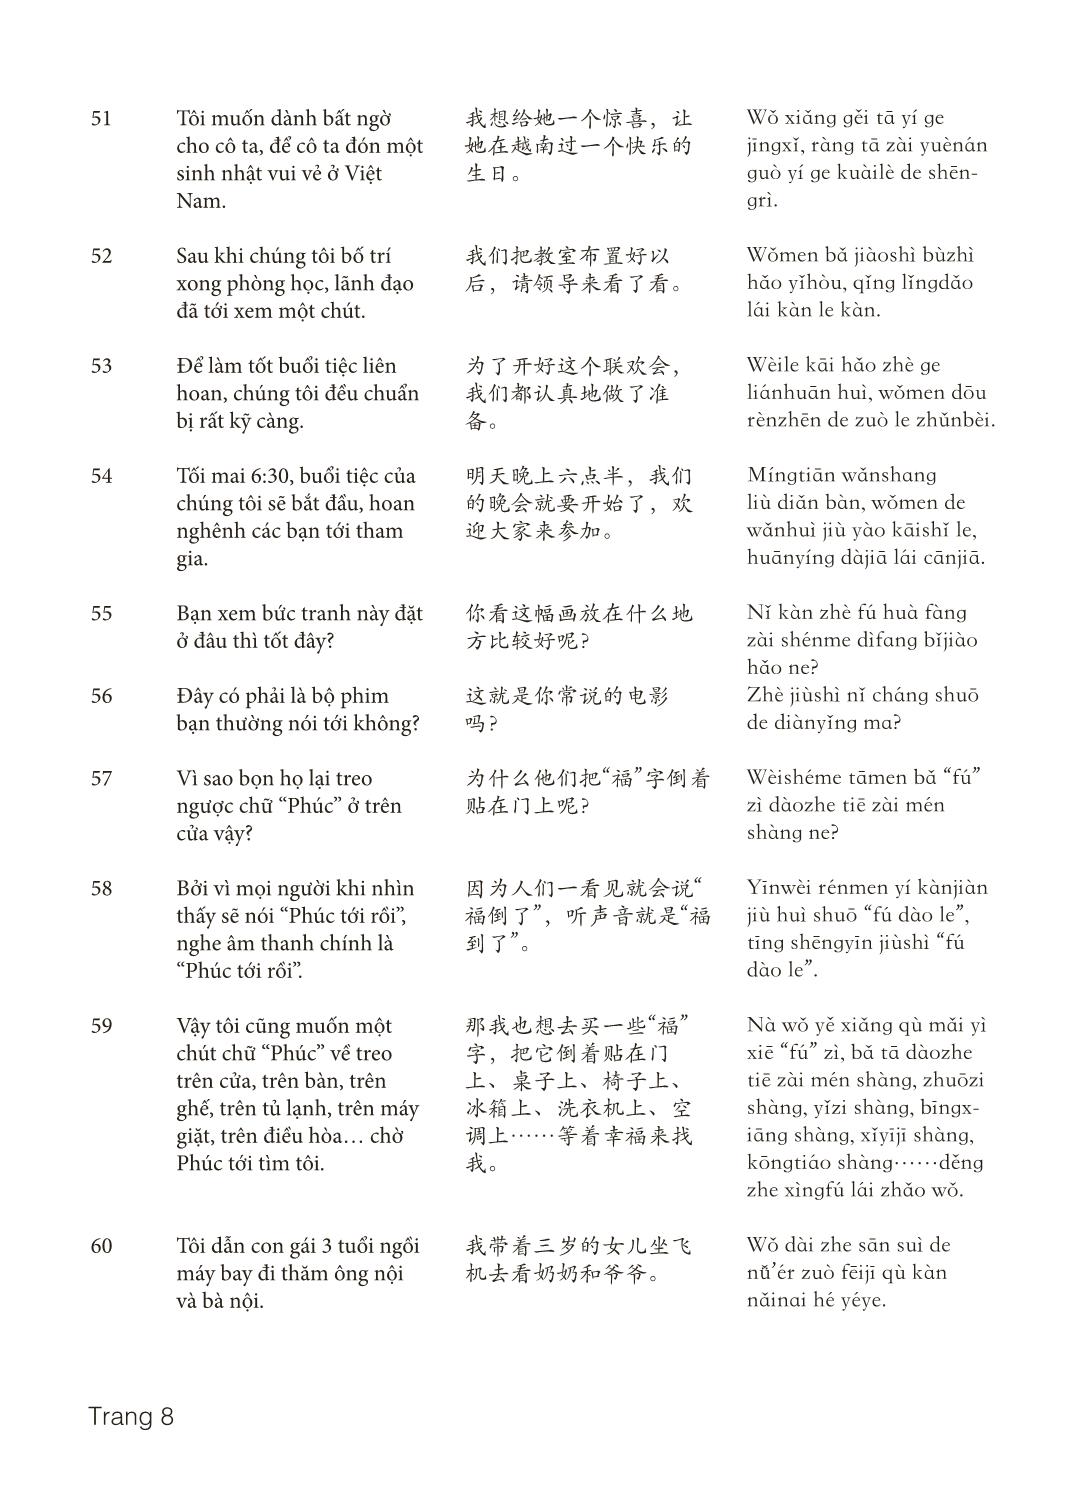 3000 Câu đàm thoại tiếng Hoa - Phần 21 trang 8